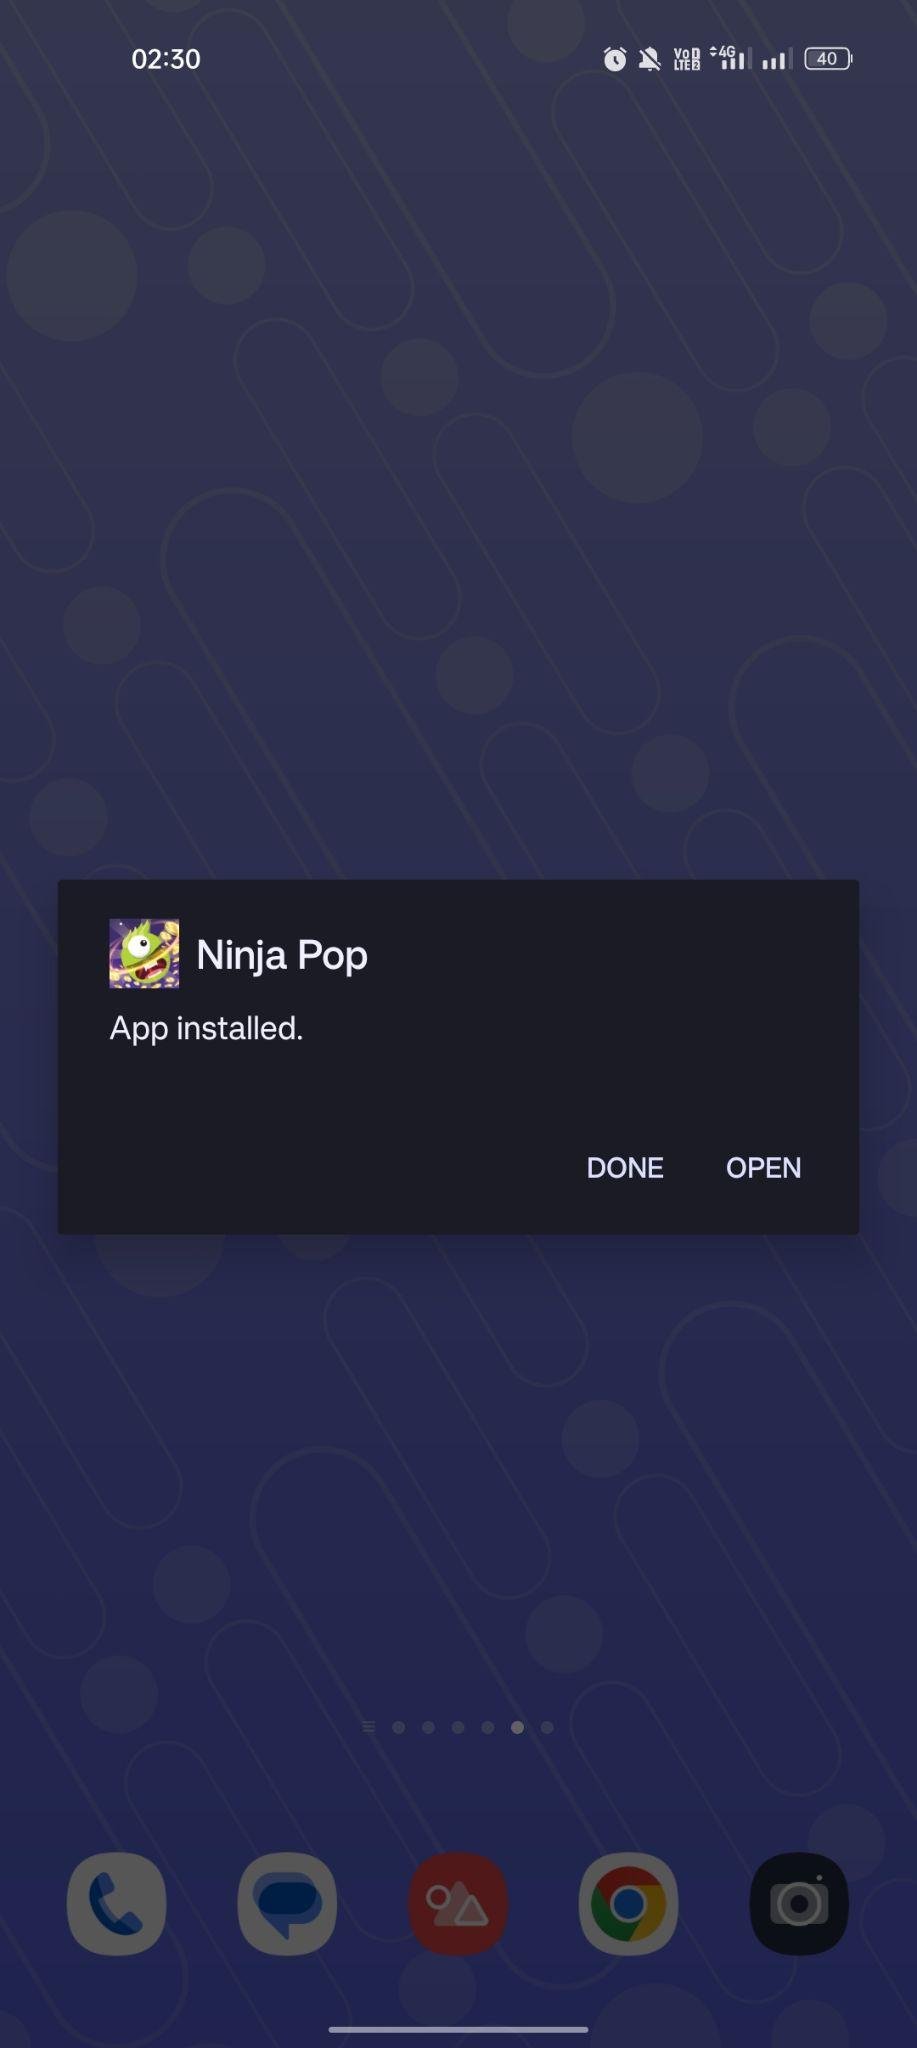 Pop Ninja apk installed